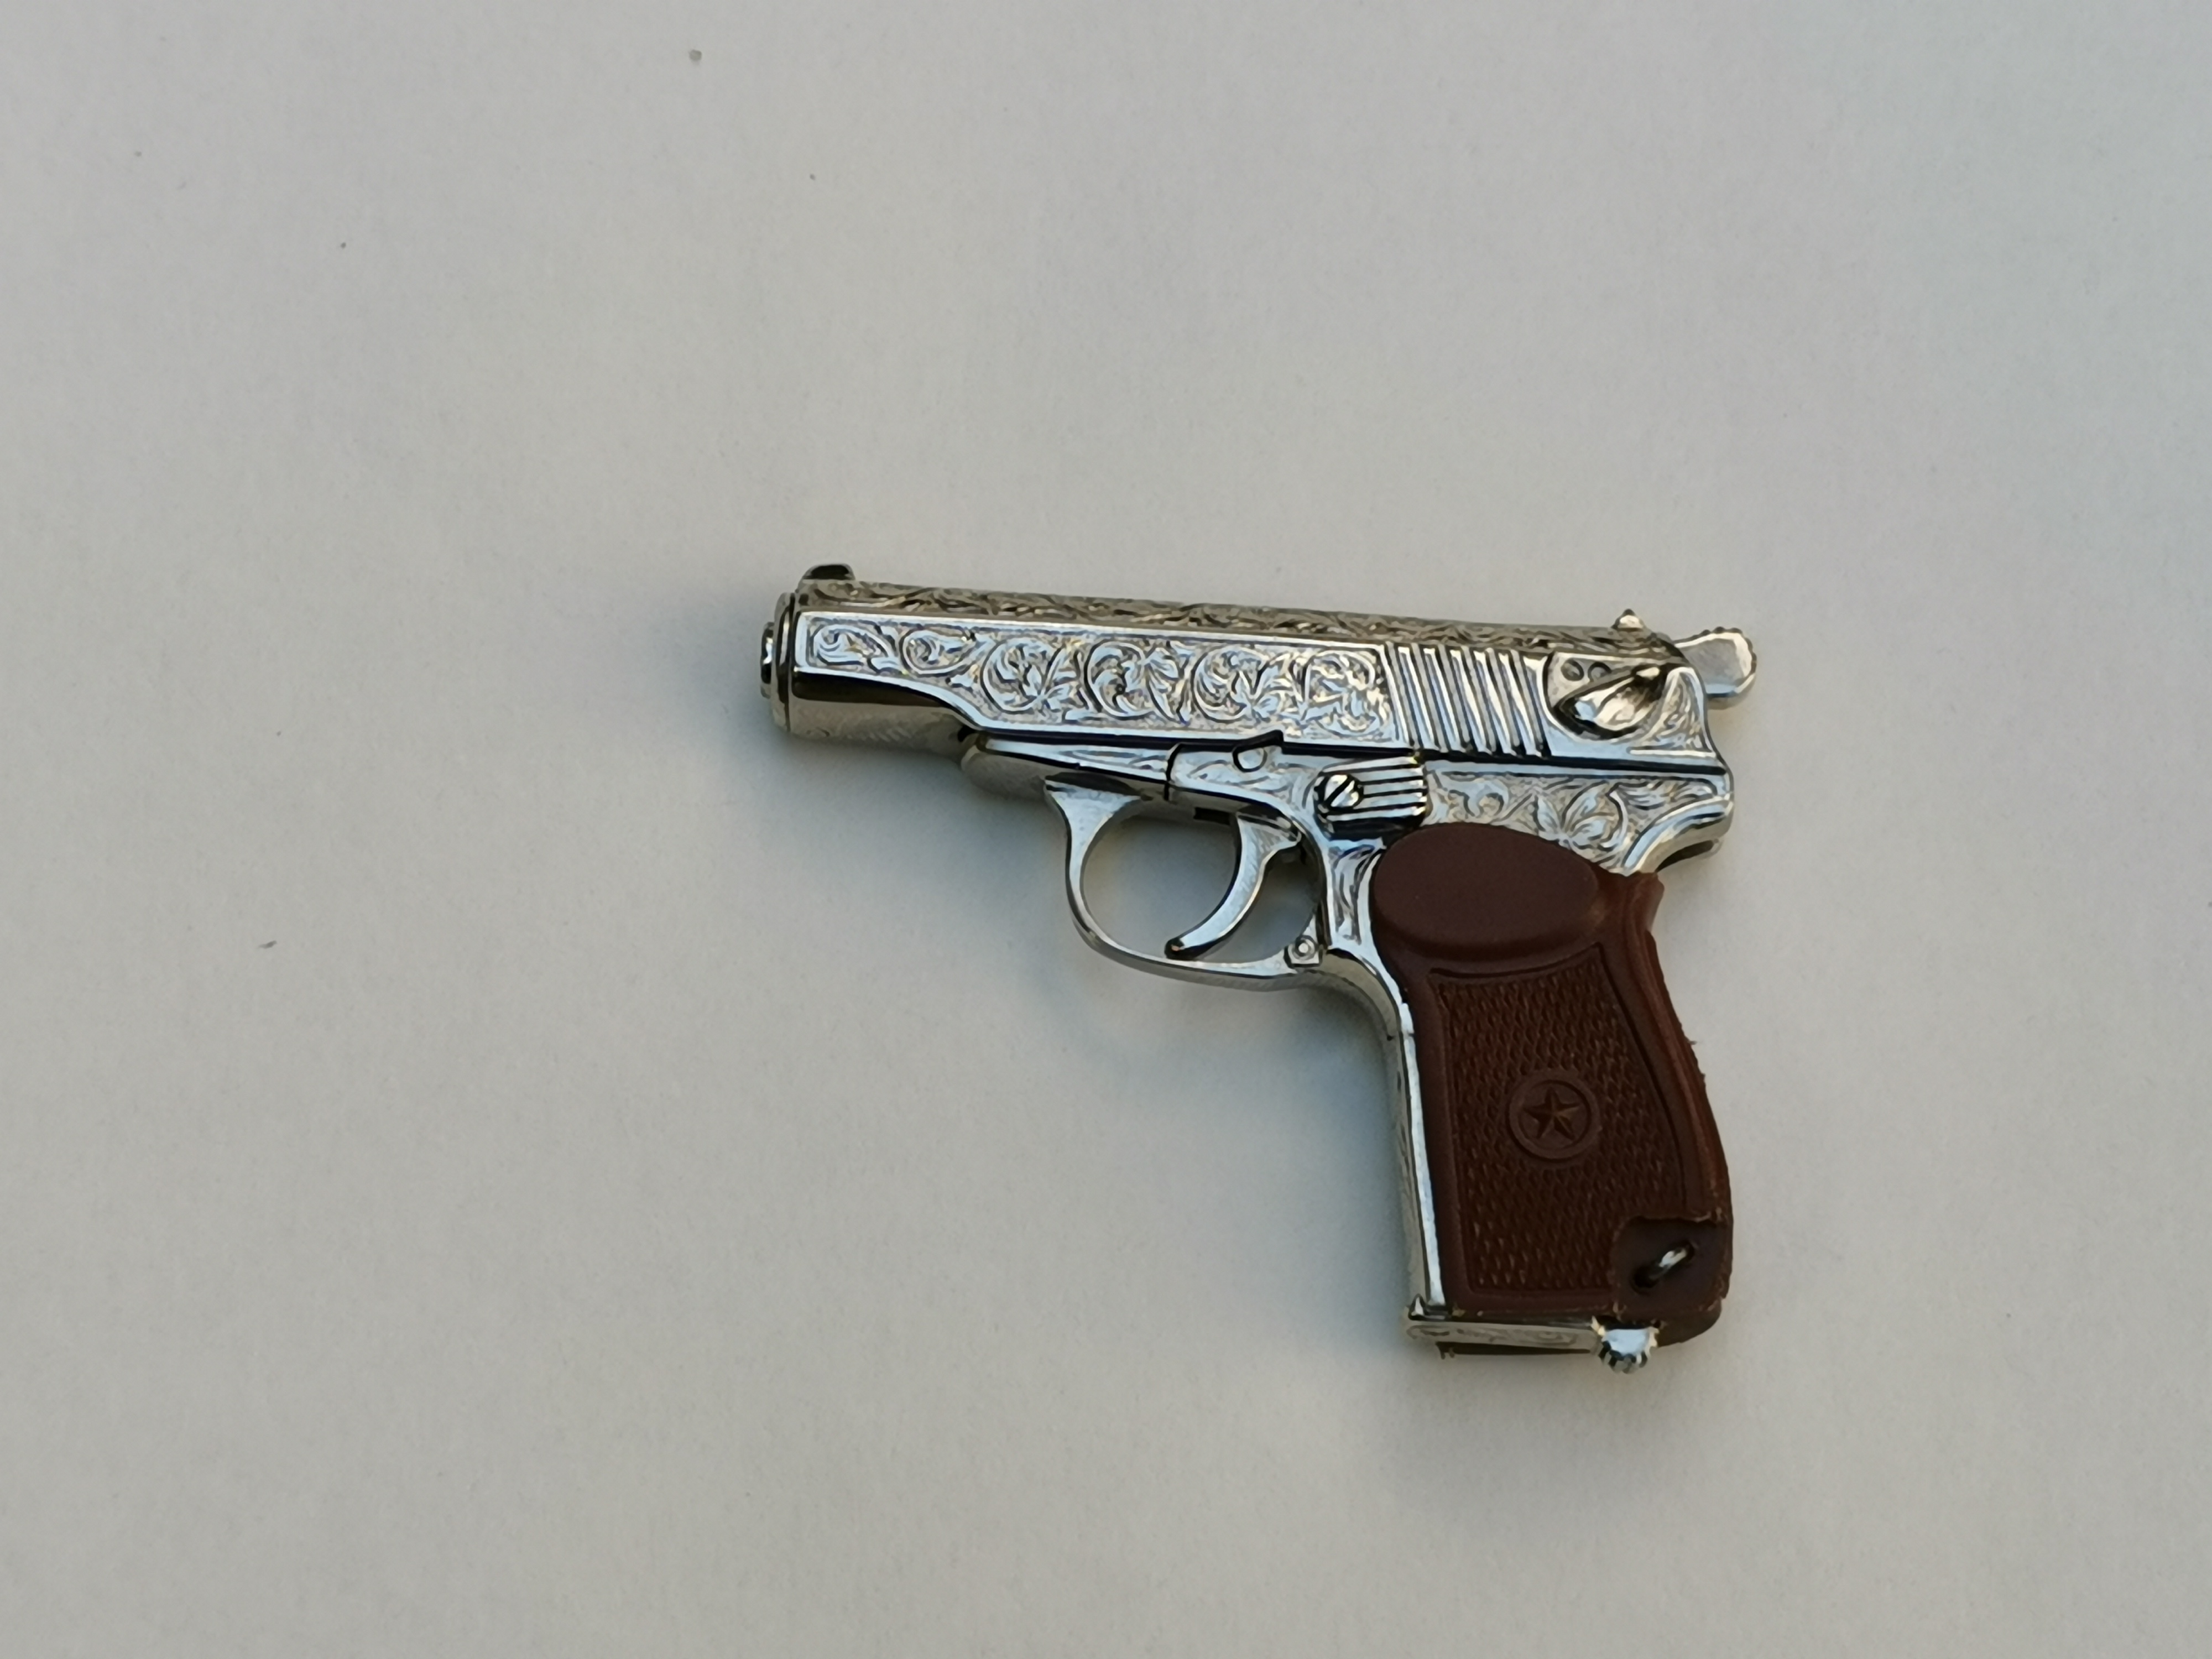 Makarov pistol engraved ����������� 1